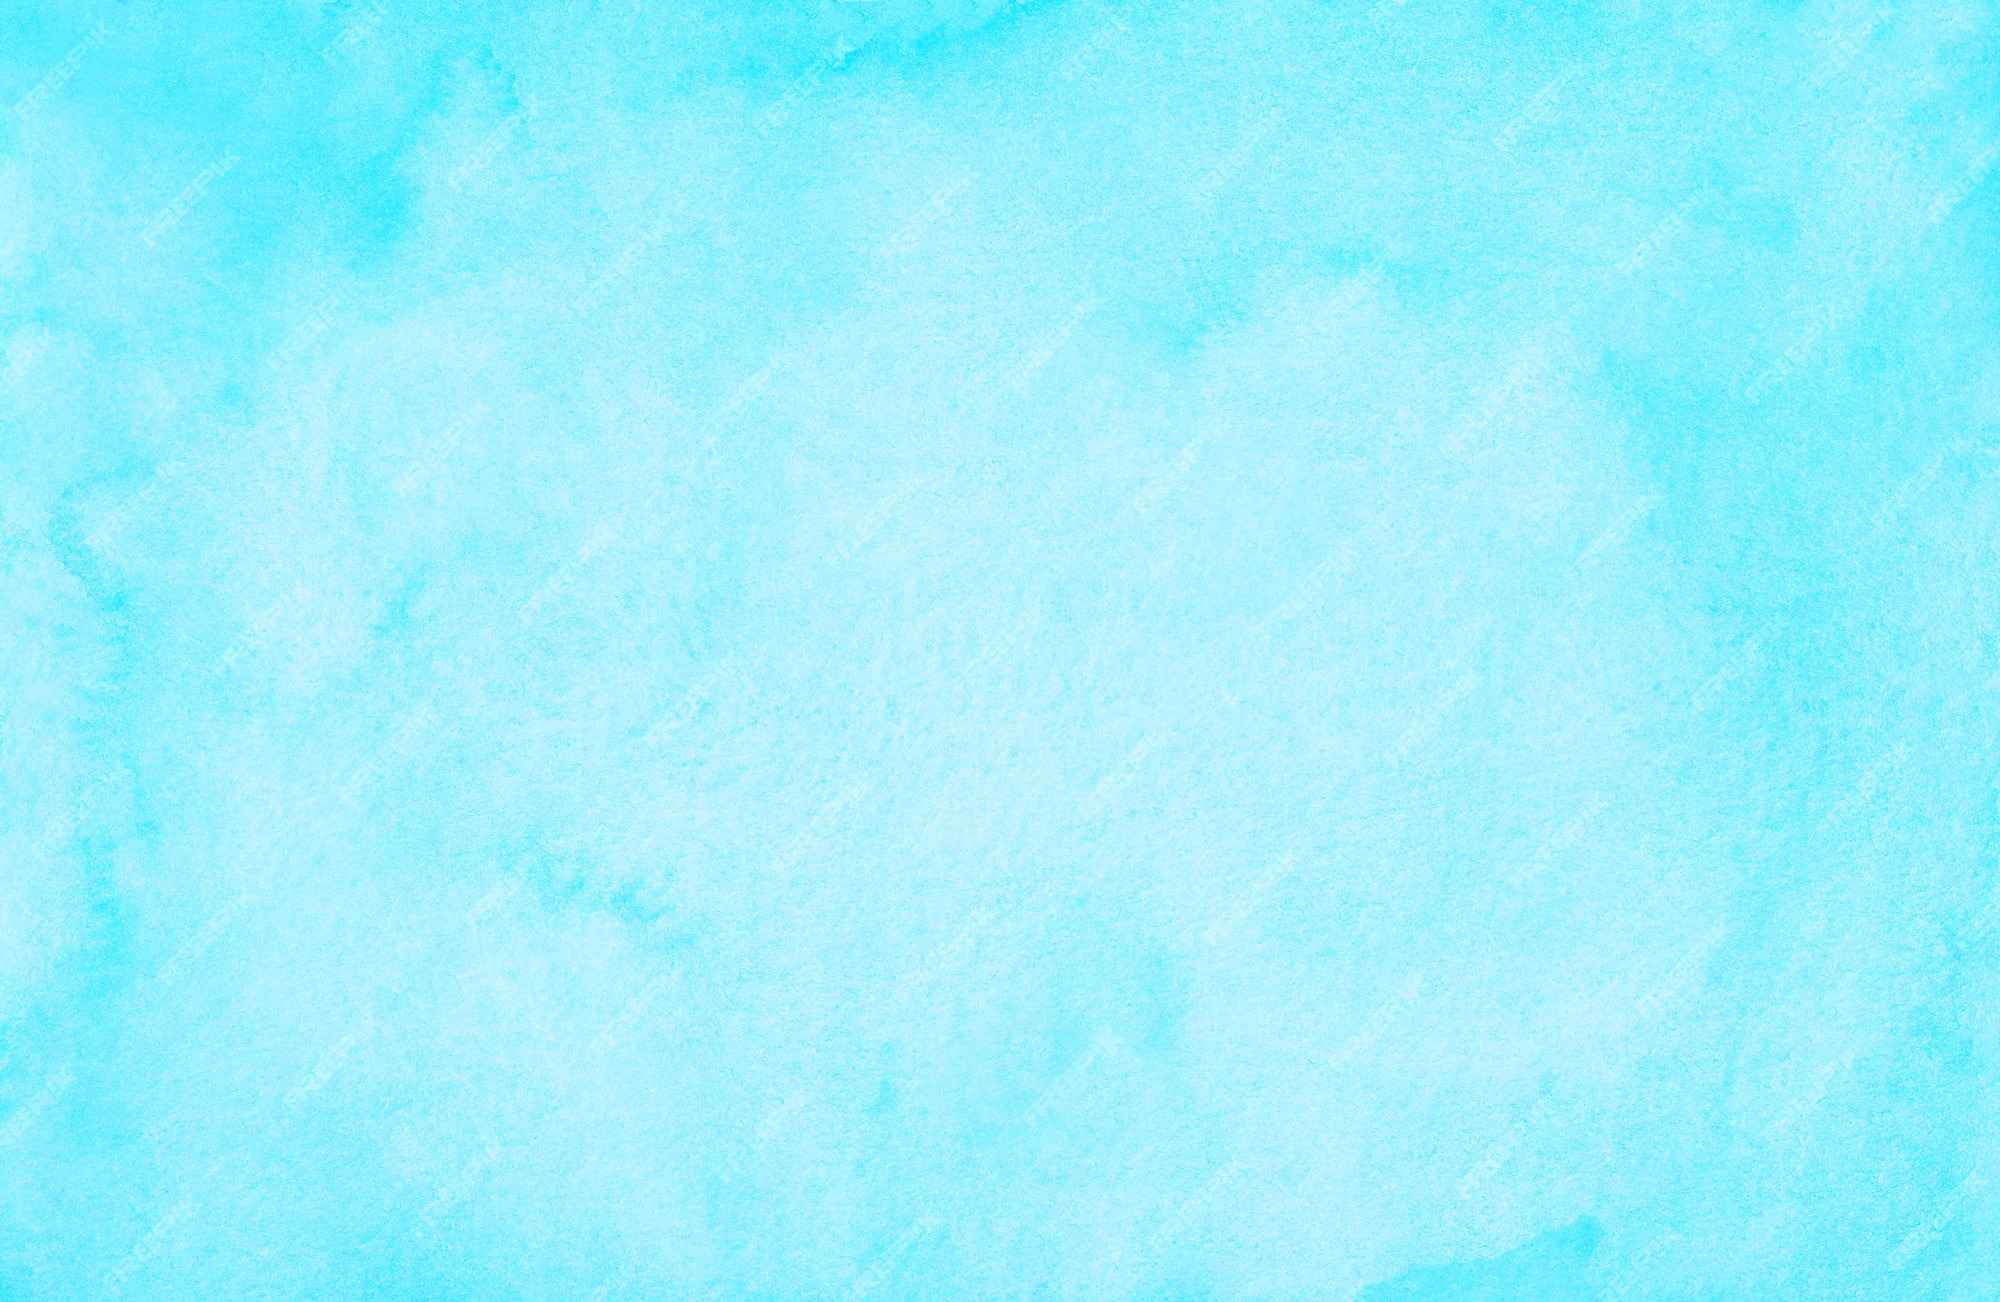 Watercolor cyan blue background: Với kết hợp giữa tím thanh lịch và xanh lá tươi trẻ, hình ảnh Watercolor cyan blue background sẽ mang đến cho bạn một khung cảnh đầy màu sắc và sinh động. Với nét vẽ nhuần nhuyễn và sắc thái màu sắc tuyệt đẹp, hình ảnh sẽ khiến bạn cảm thấy thoải mái và yên tâm.